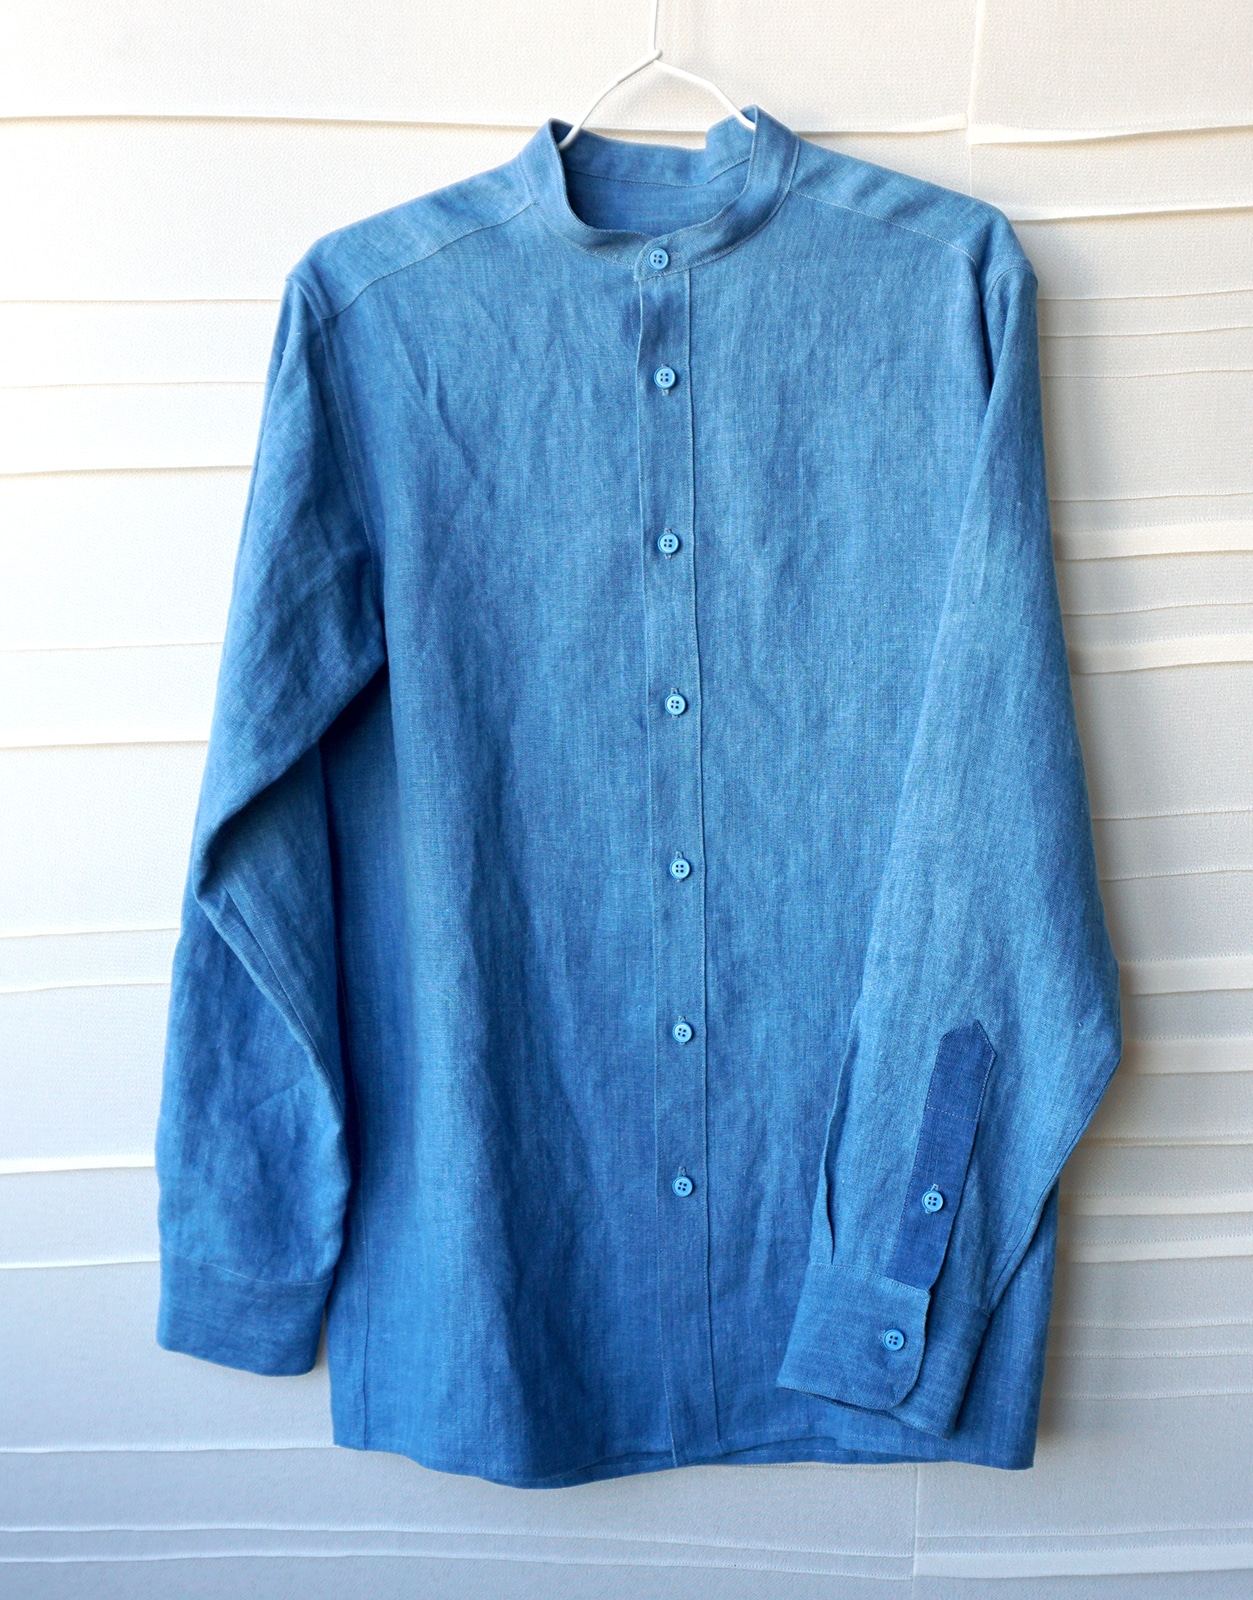 Modele final de chemise - Projet Bleu - Studio sur-mesure